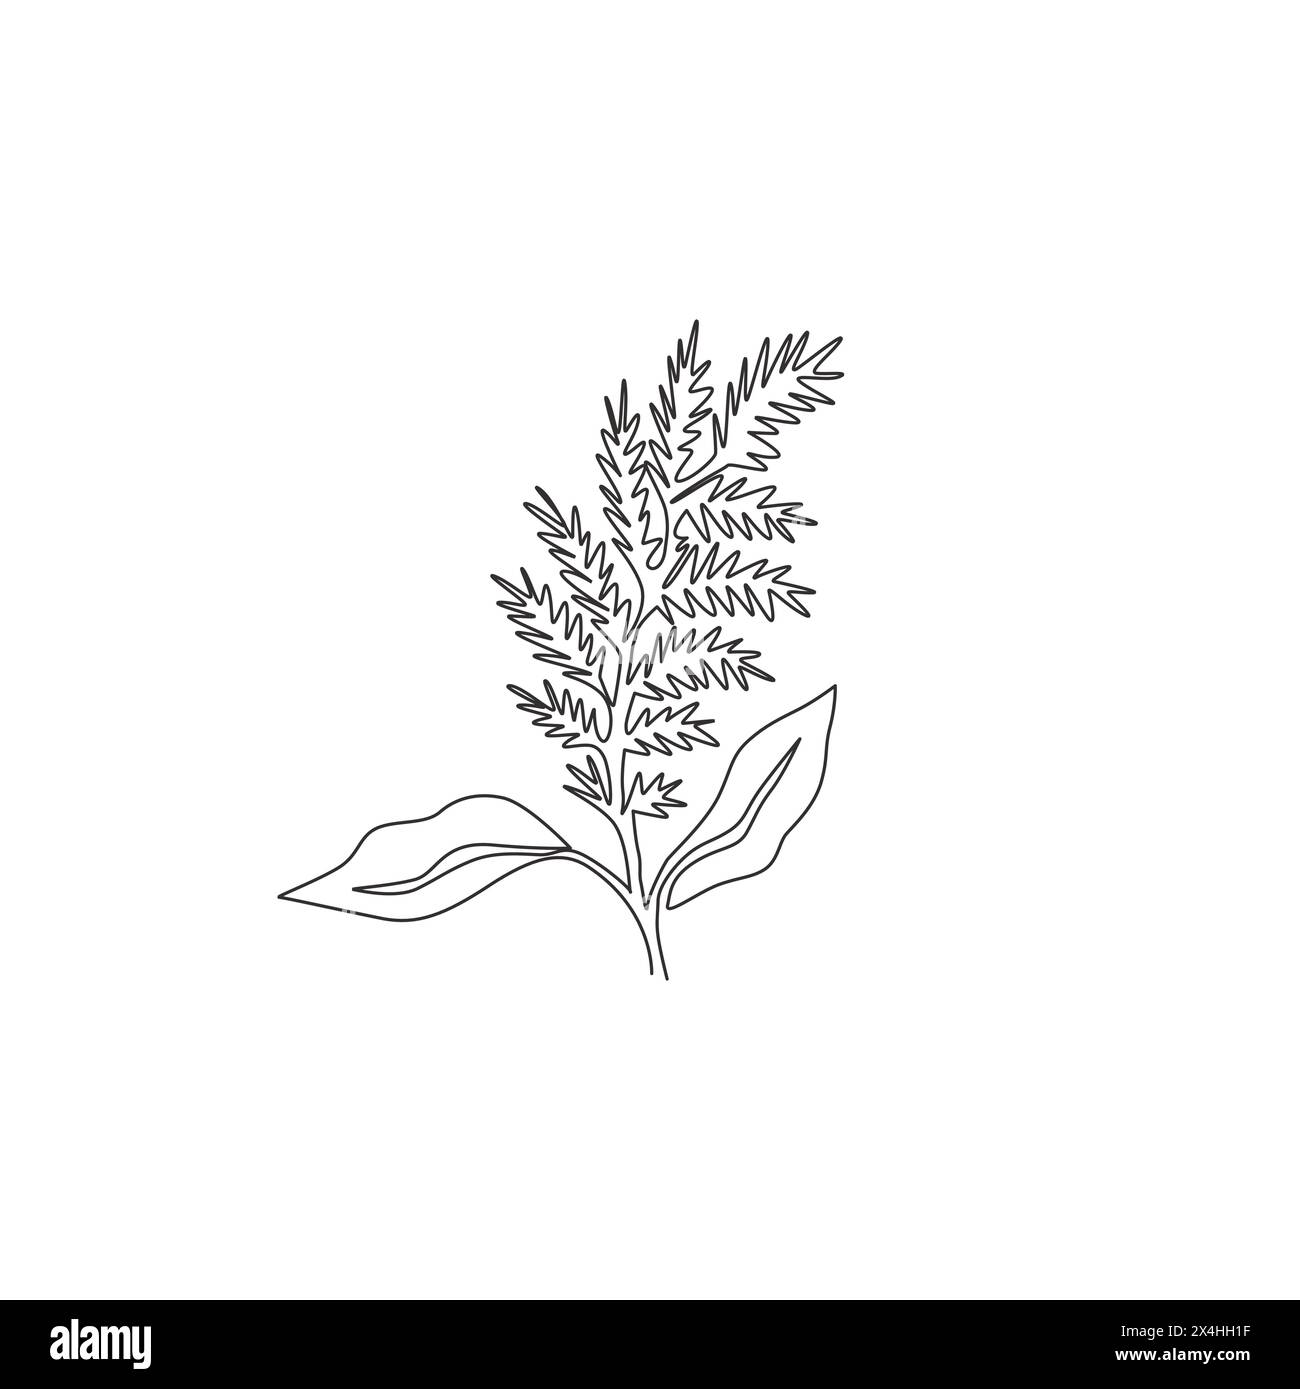 Un dessin en ligne continue de beauté fraîche amaranthus pour décoration murale à la maison Ar poster imprimé. Concept décoratif de fleur d'amarante pour invitation de mariage Illustration de Vecteur